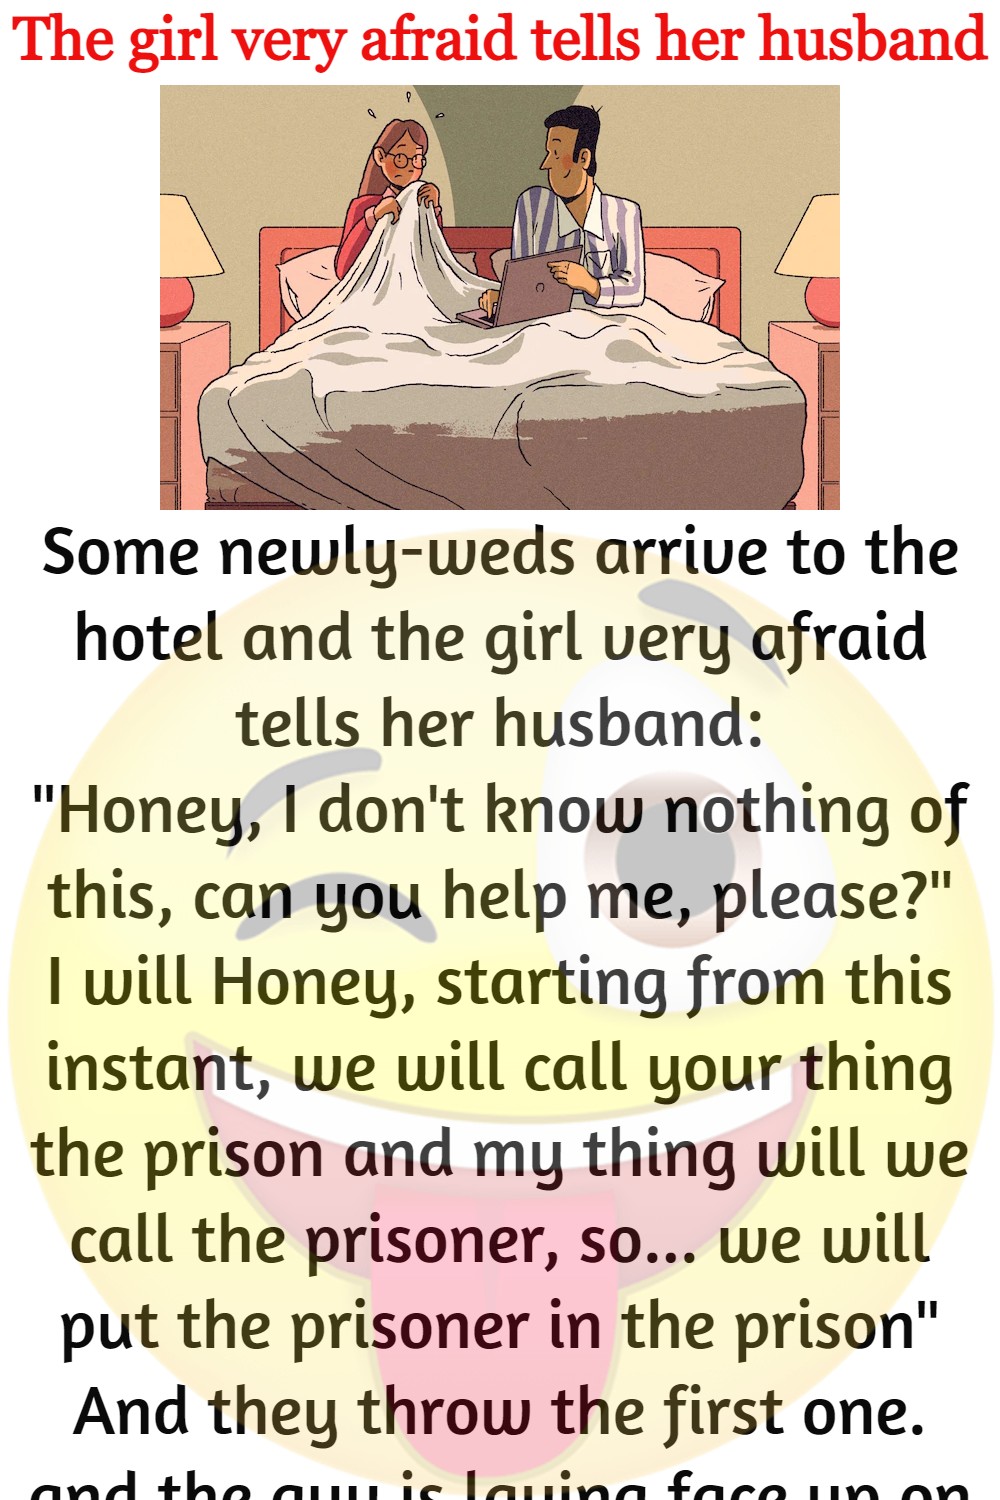 The girl very afraid tells her husband